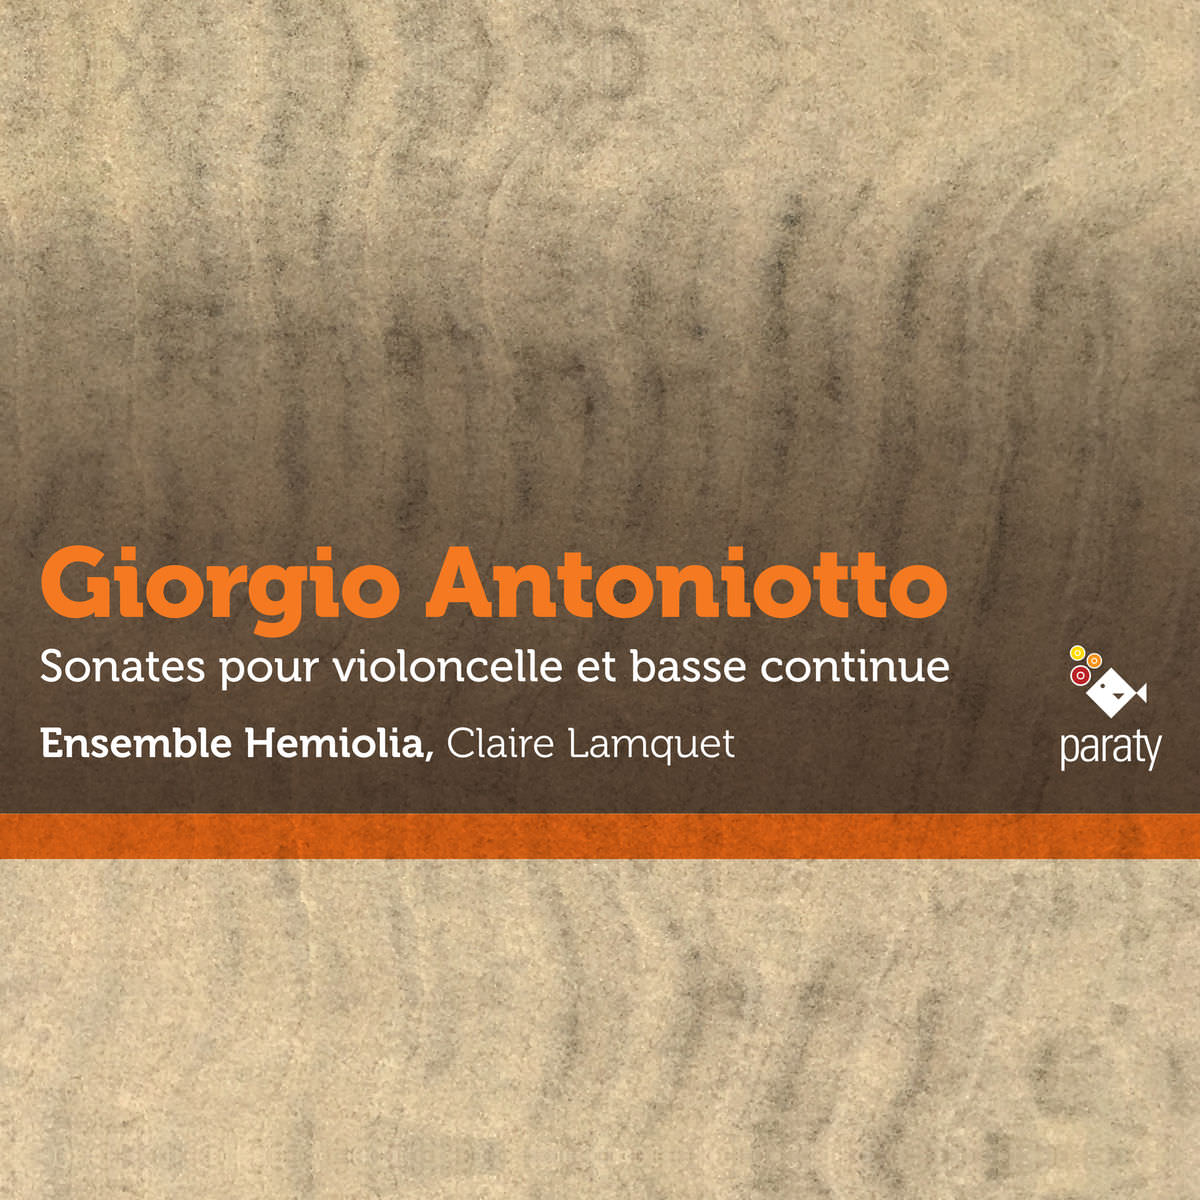 Ensemble Hemiolia & Claire Lamquet - Antoniotto: Sonates pour violoncelle et basse continue (2017) [FLAC 24bit/88,2kHz]